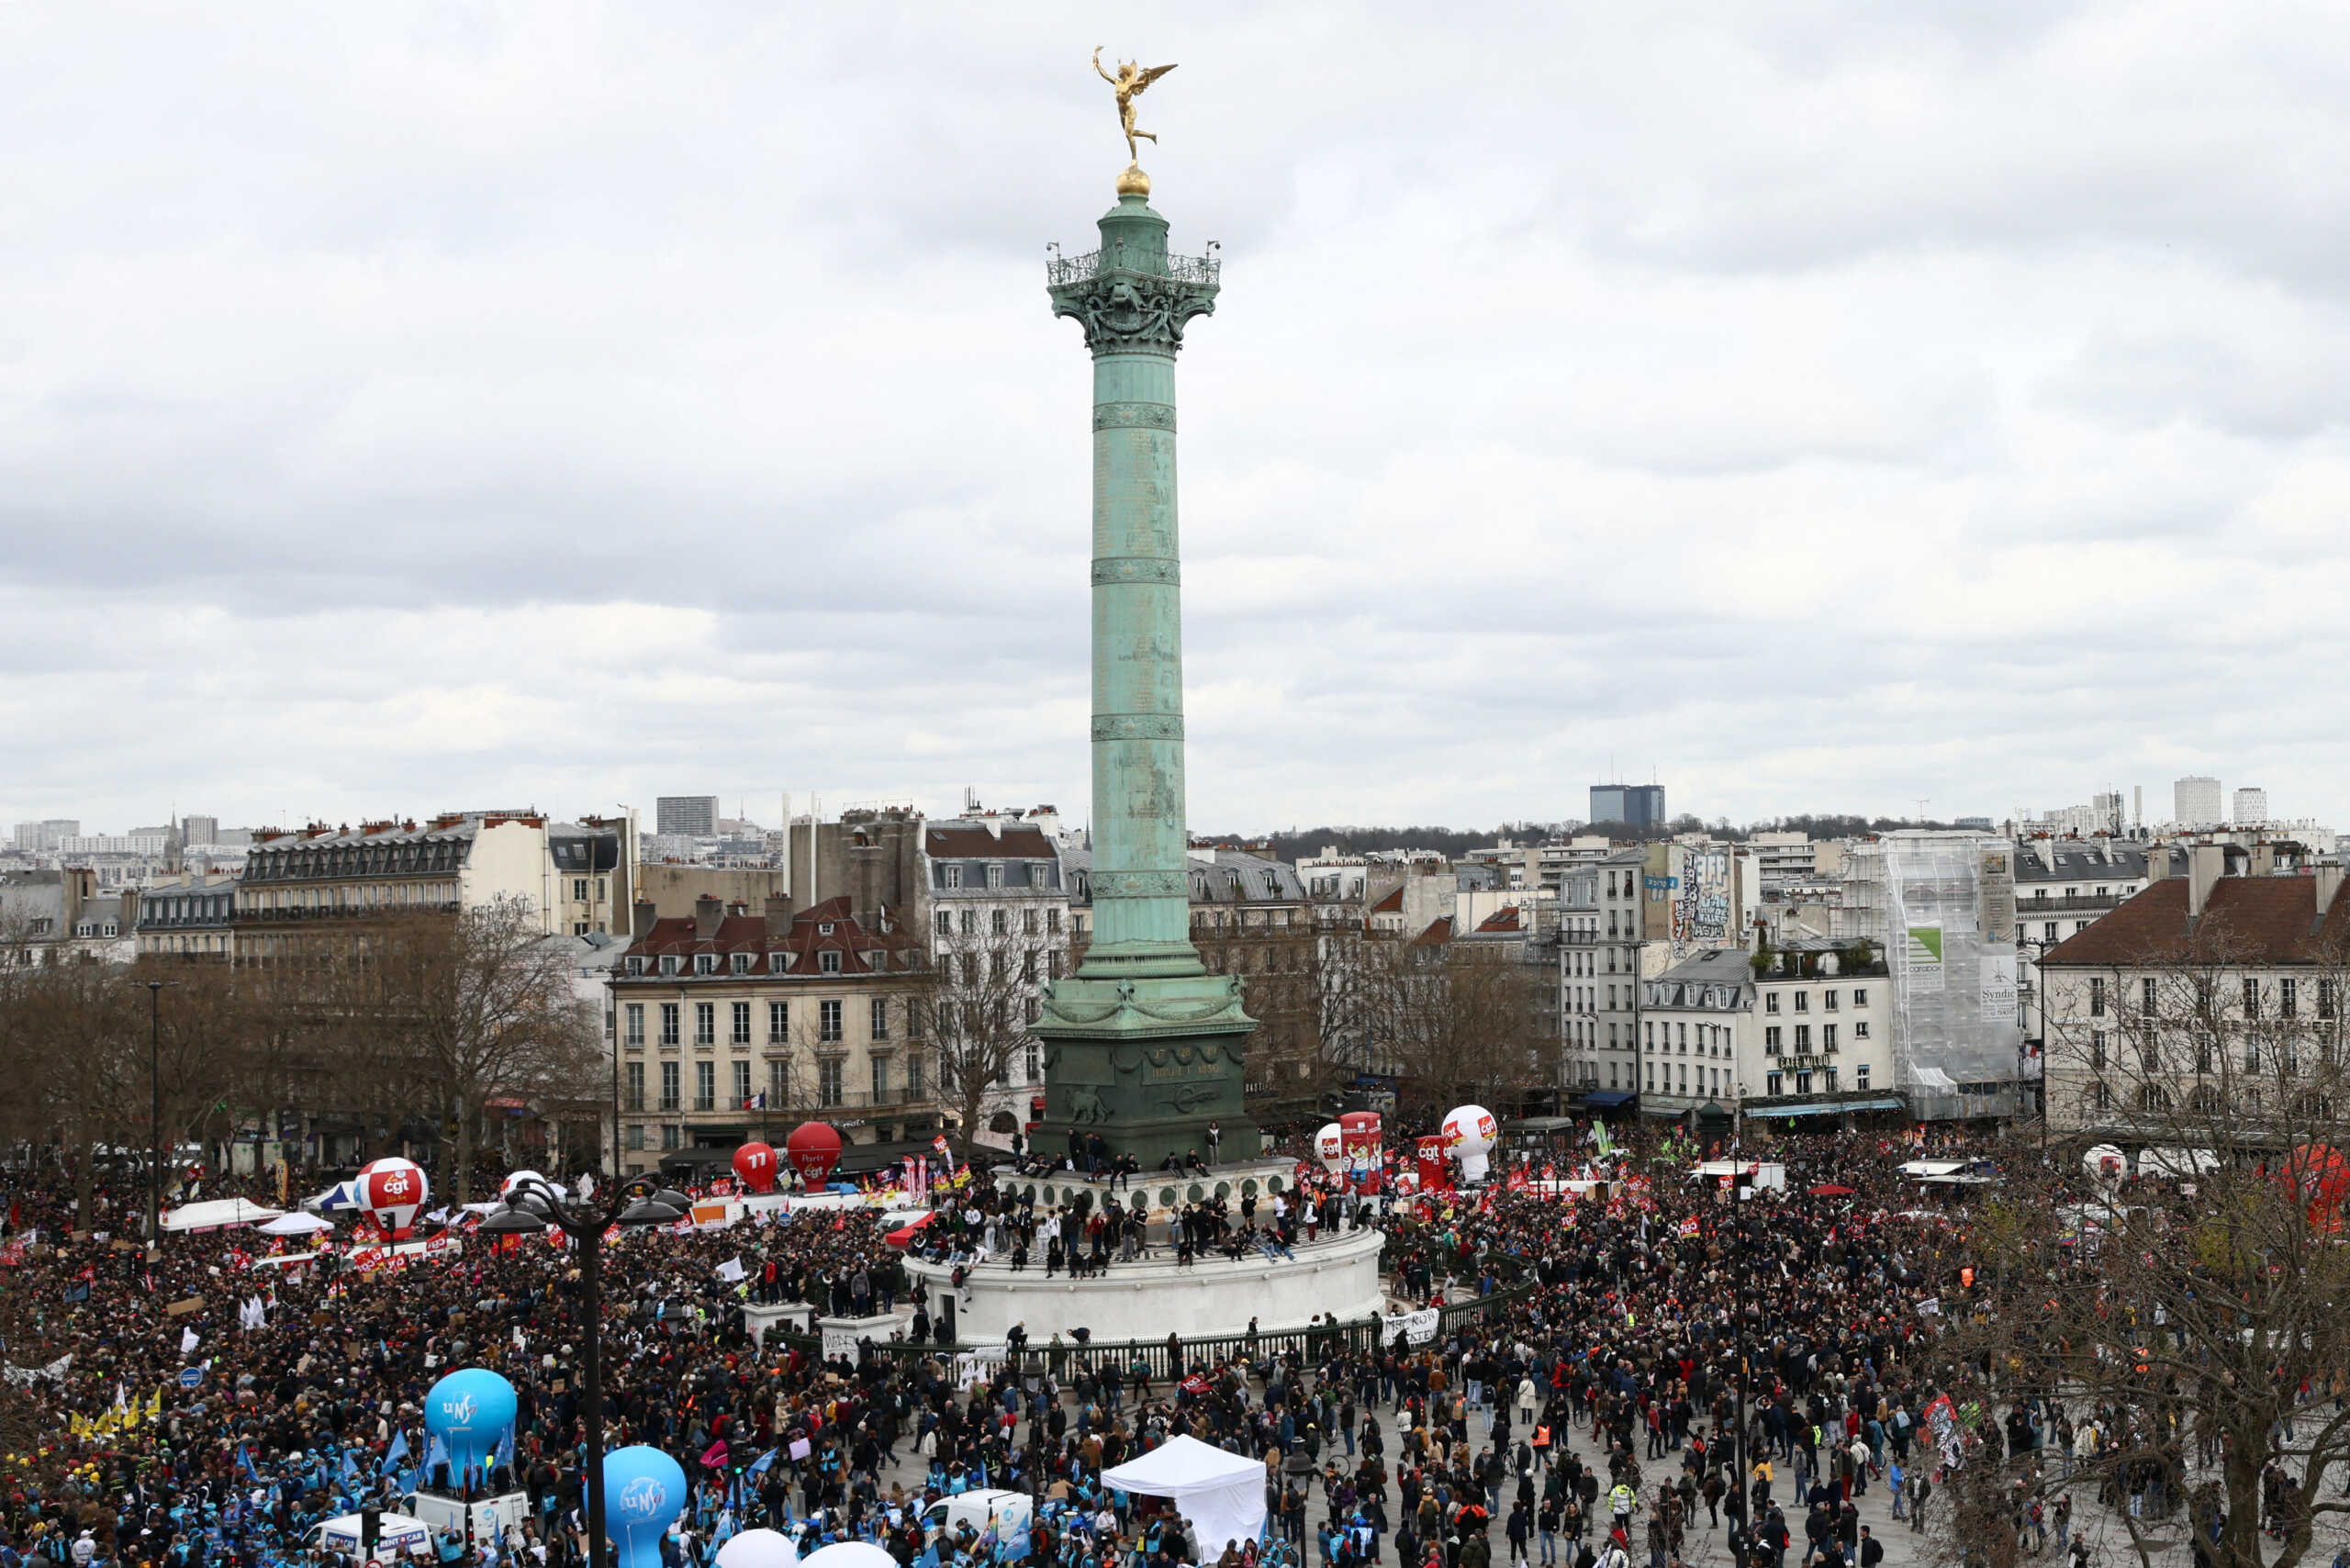 ΒΙΝΤΕΟ: Παρίσι: Σέρνουν αστυνομικό για να τον σώσουν από το εξαγριωμένο πλήθος – 9η ημέρα επεισοδίων